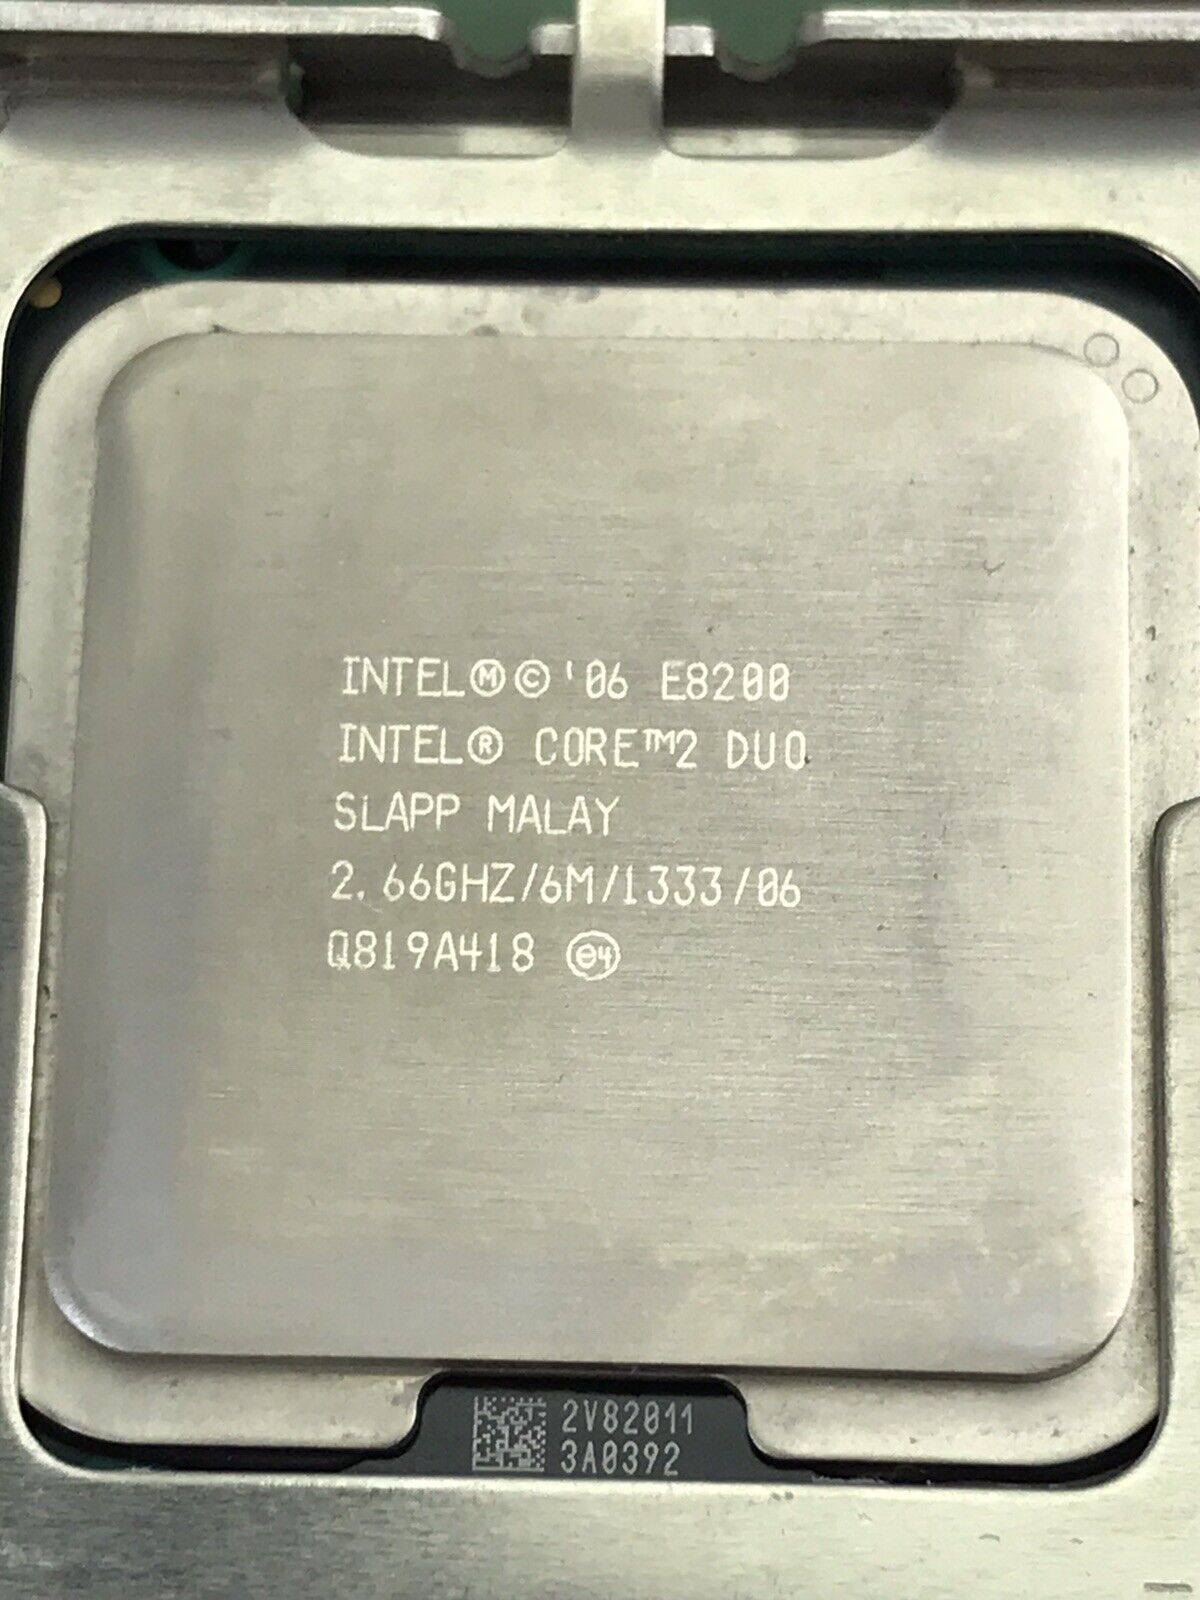 Dell E219542 Optiplex 755 Motherboard Intel Core 2 Duo E8200 CPU 4GB RAM PU052